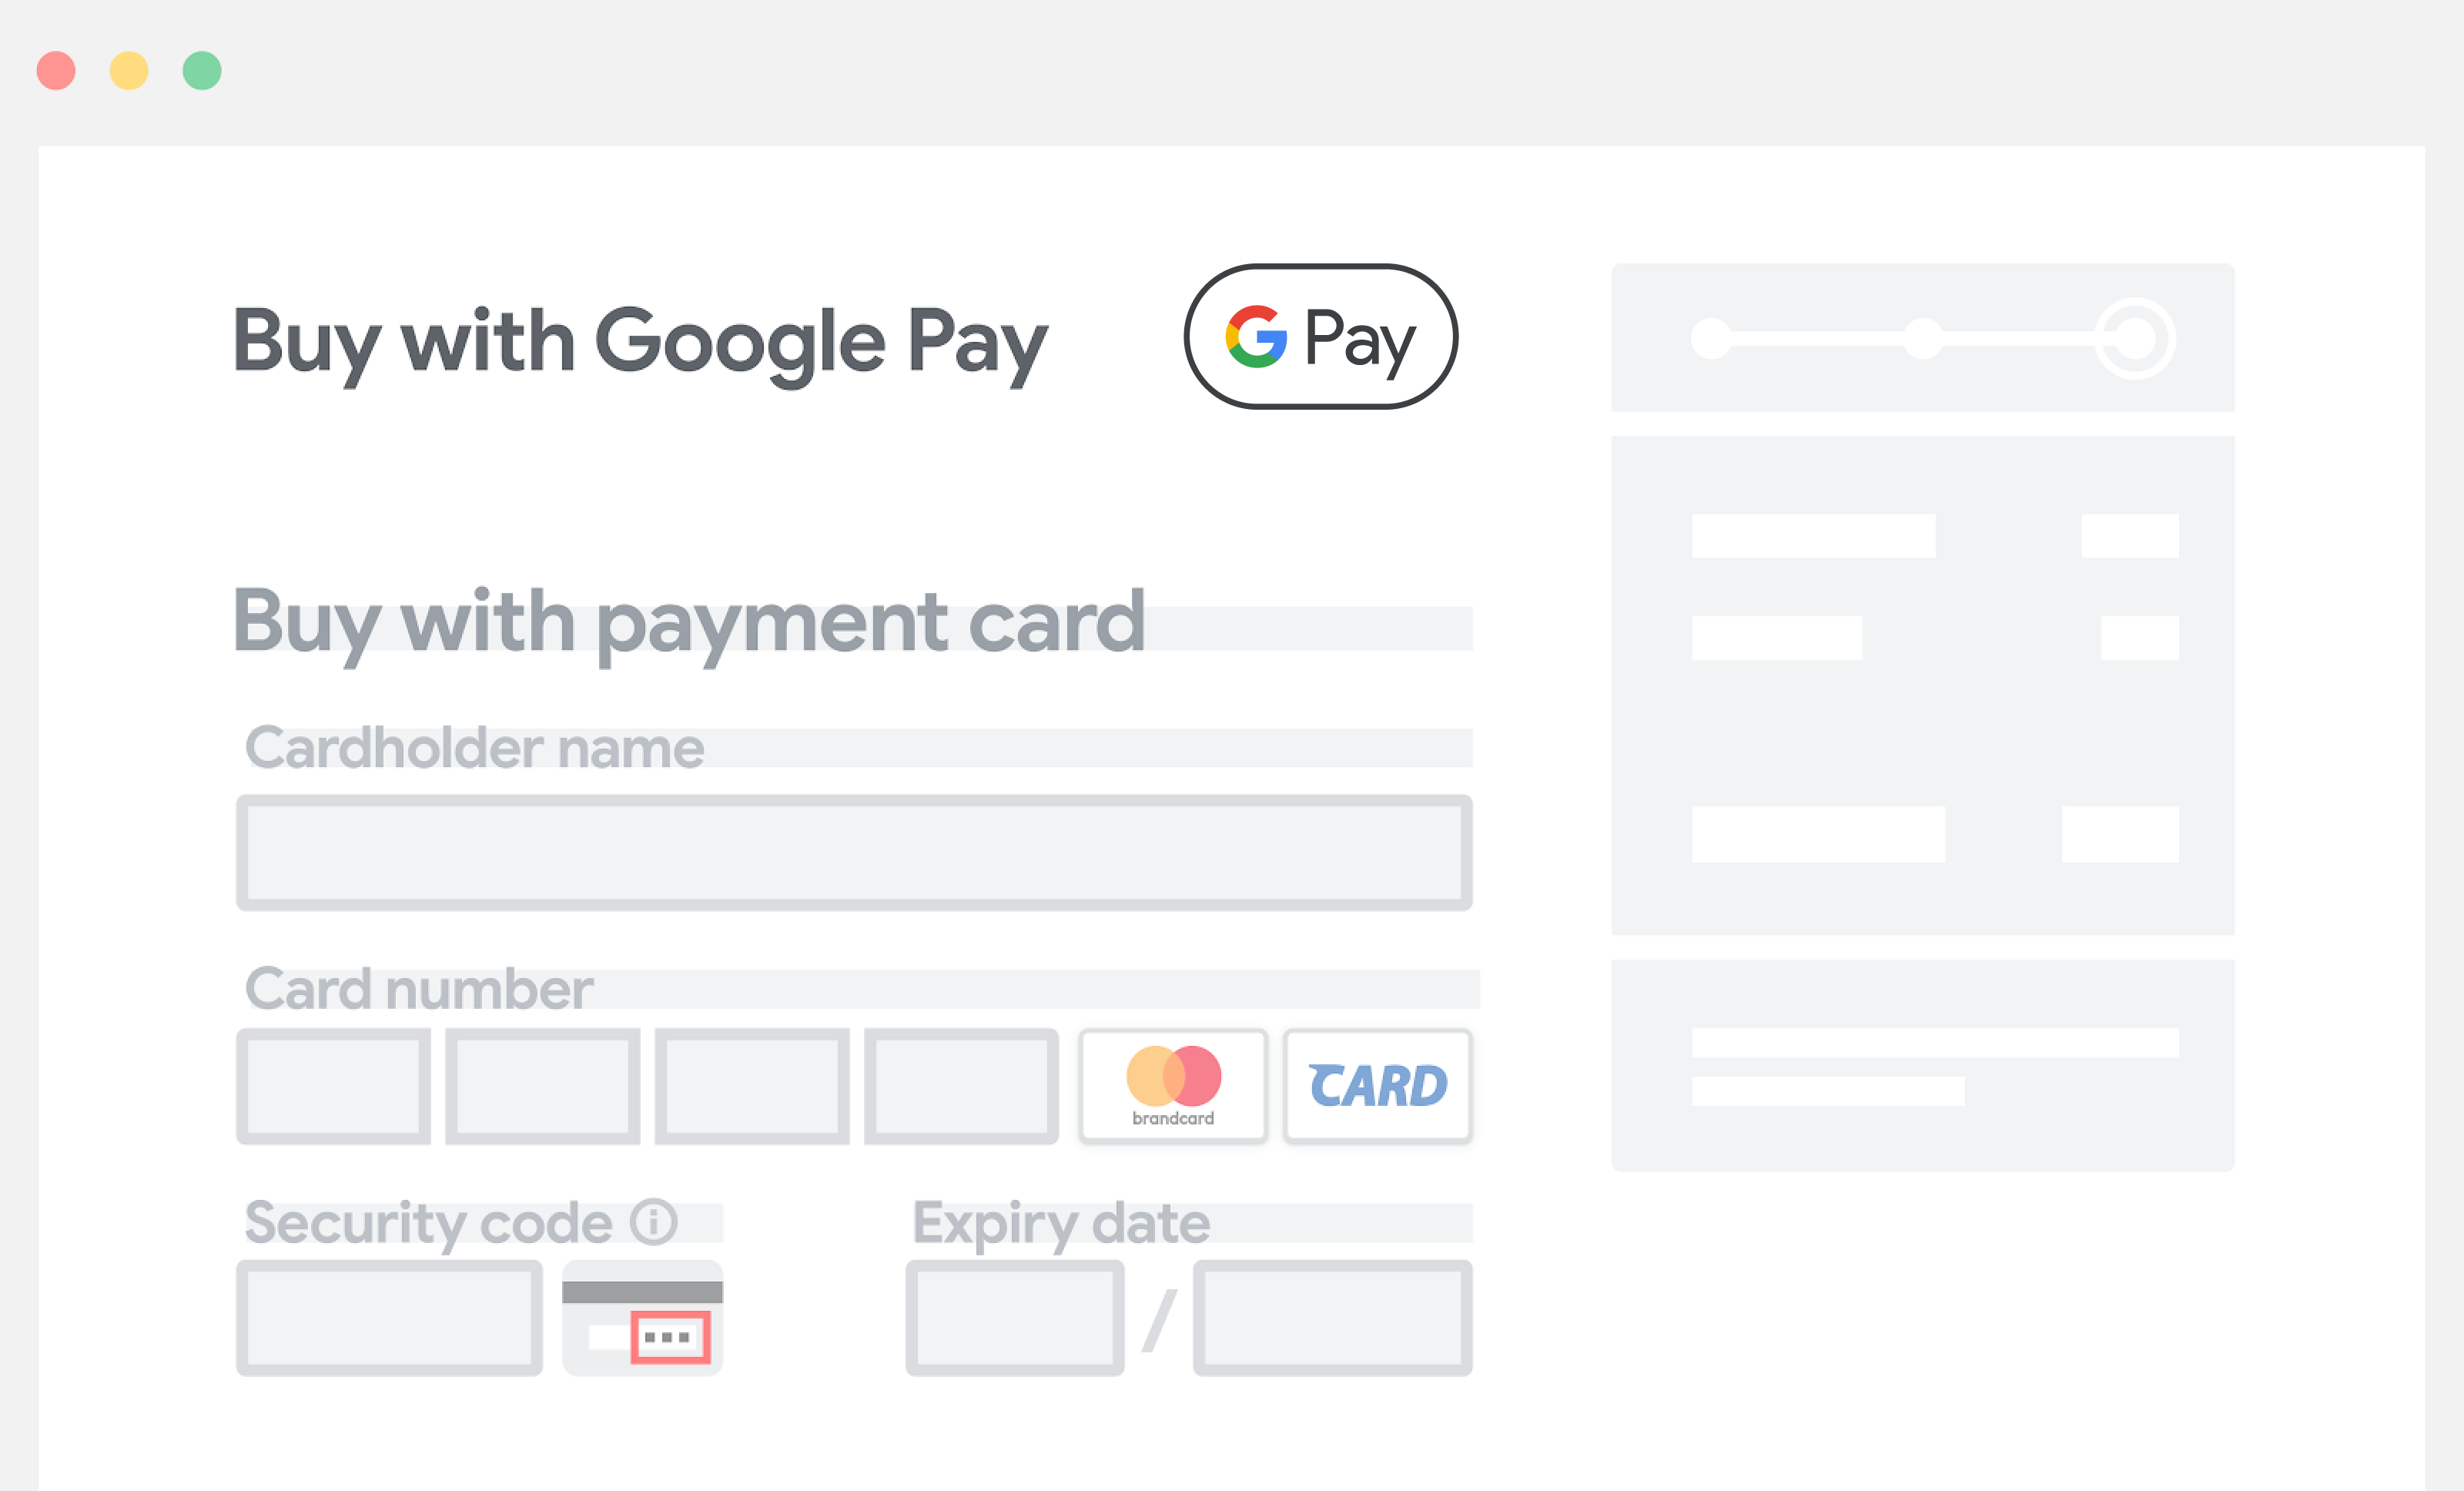 Colocar o Google Pay acima dos campos de entrada manual das informações de pagamento.